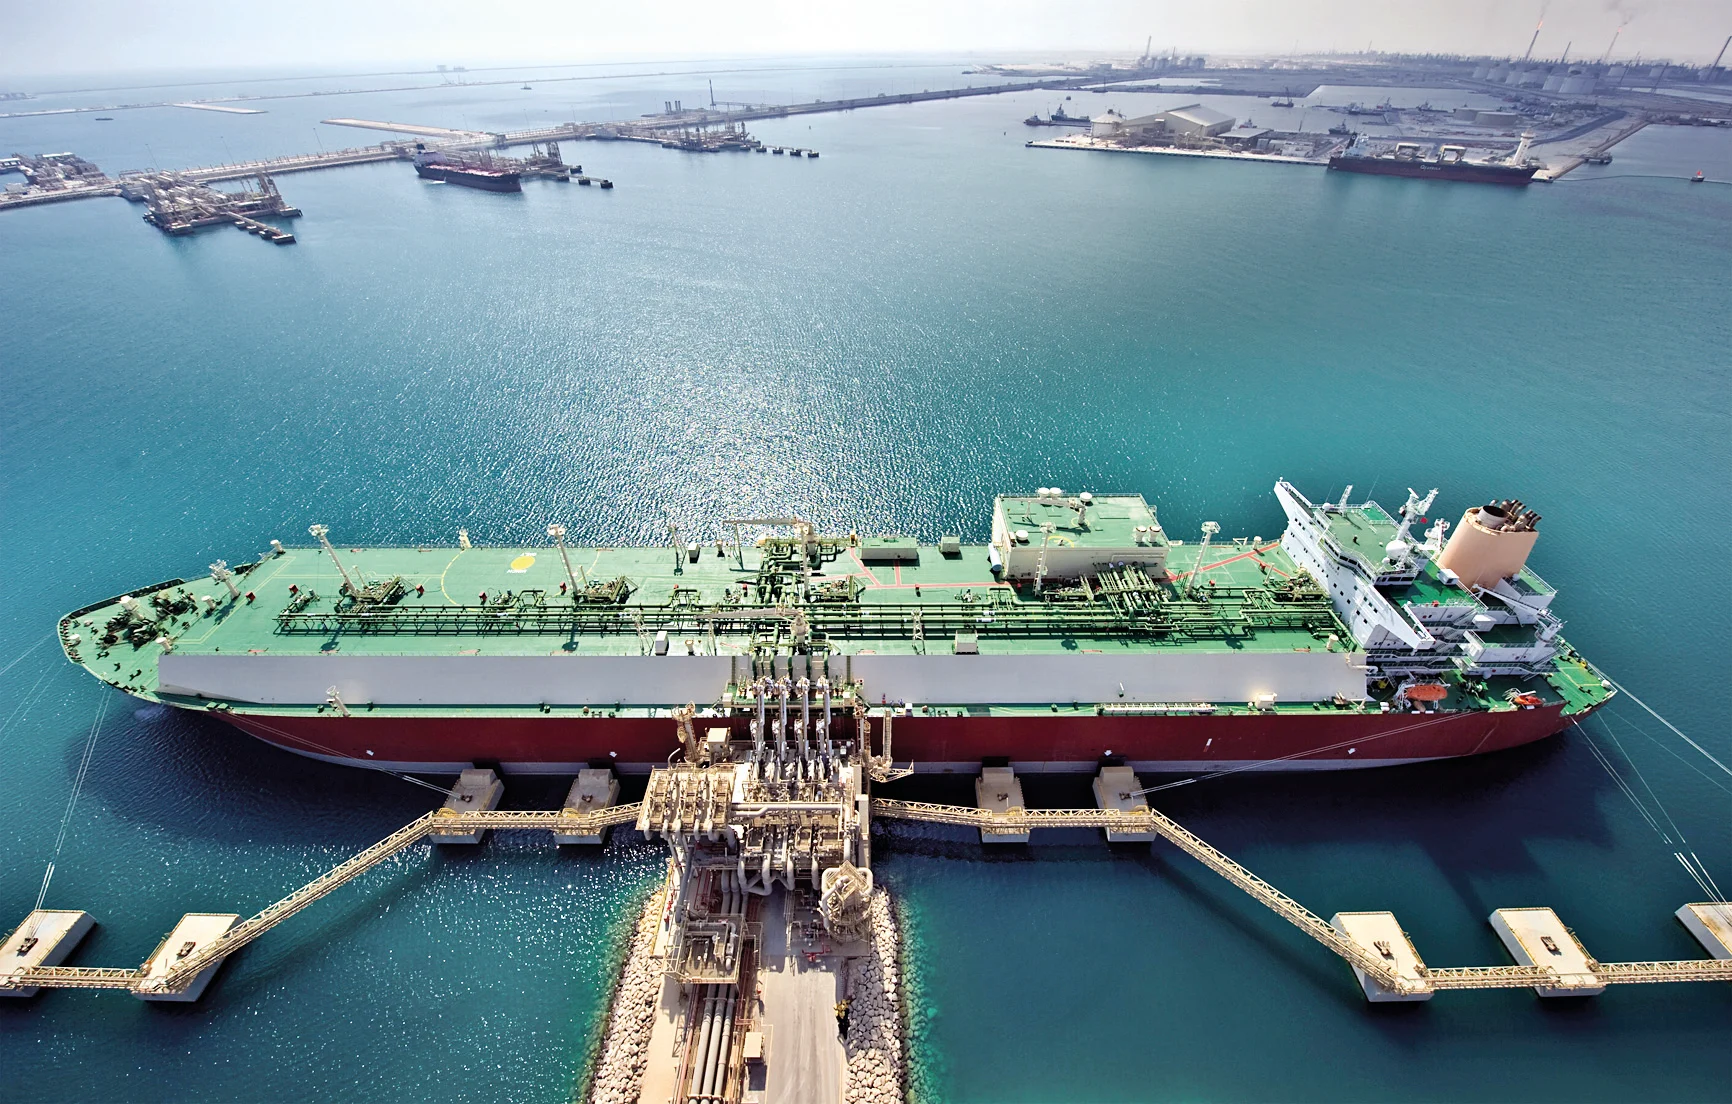 قطر تتطلع إلى توقيع اتفاقيات طويلة الأمد مع الدول الغربية في خطوة من شأنها أن تقلب خريطة الطاقة في العالم رأسا على عقب watanserb.com